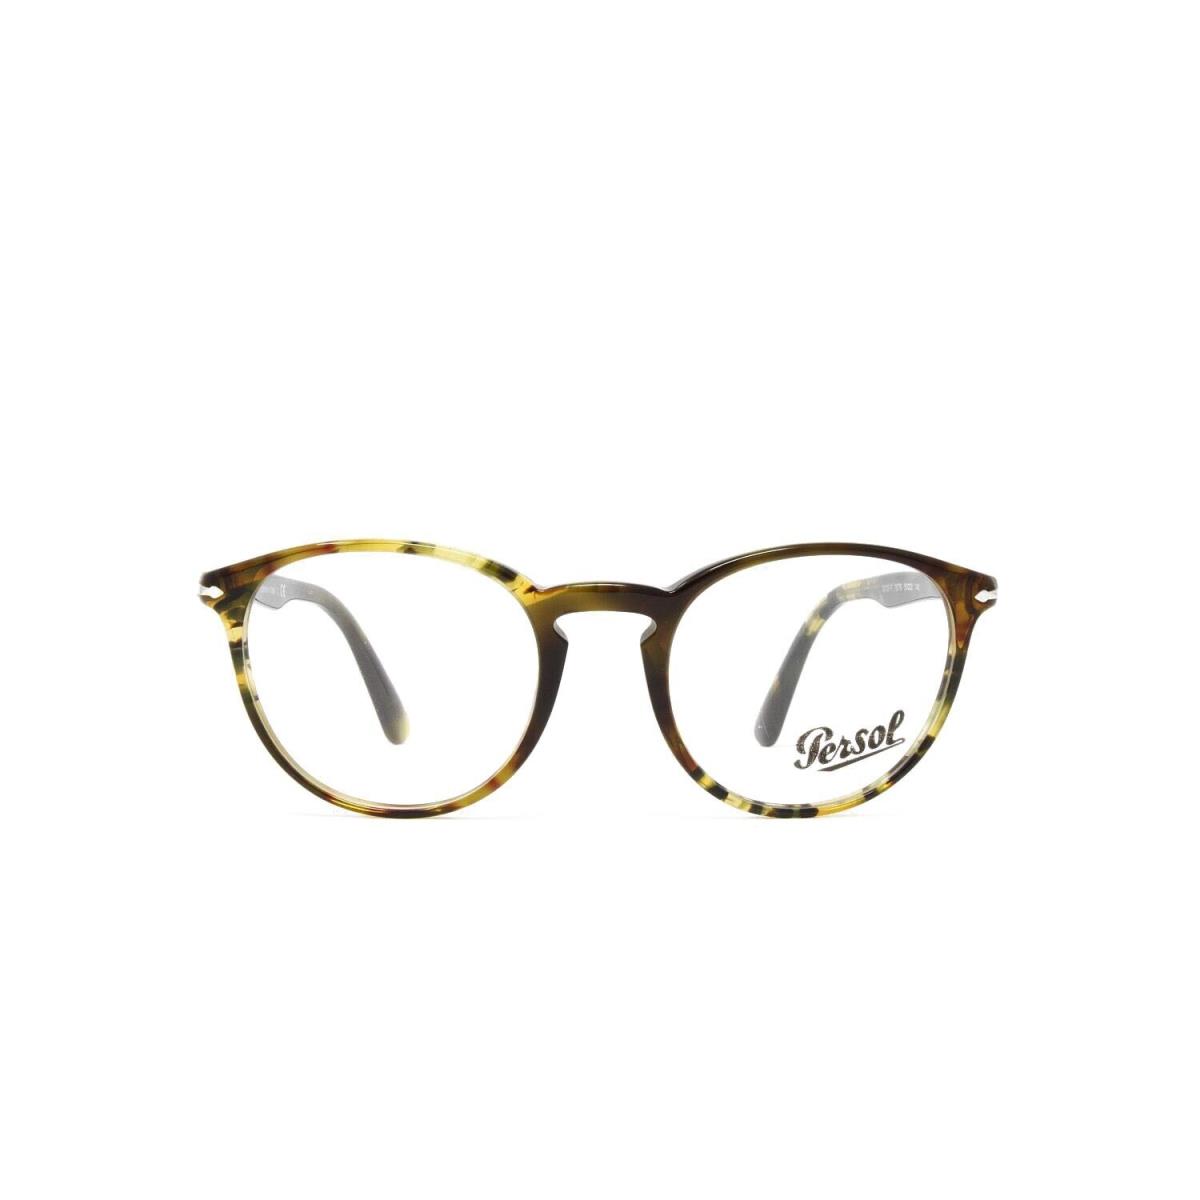 Persol eyeglasses  - Brown Frame 0